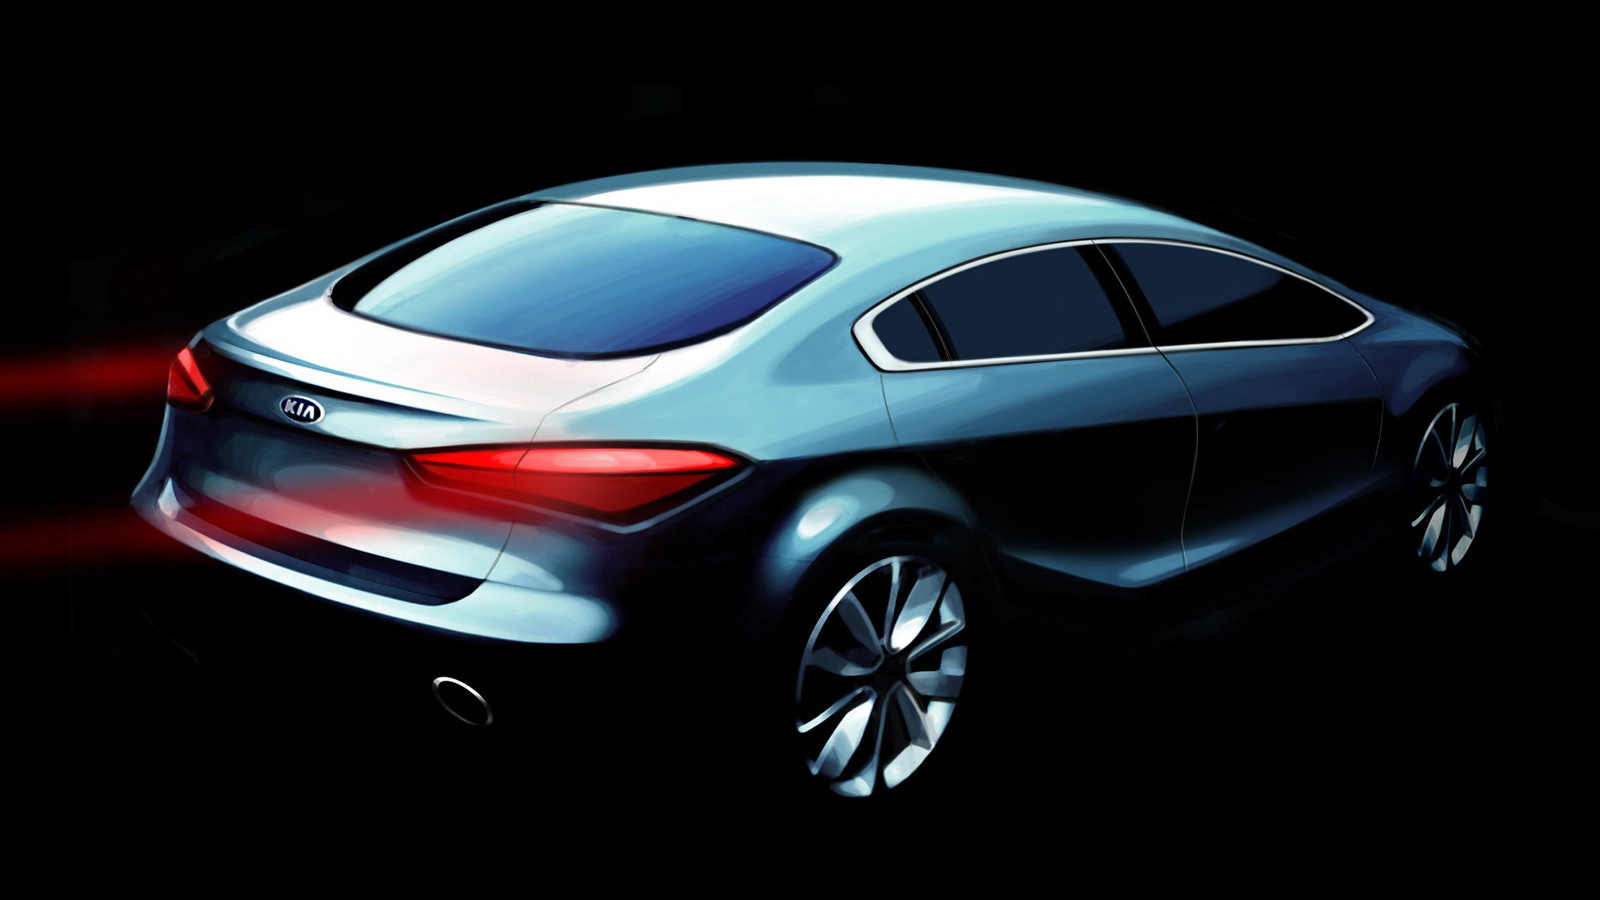 2014 Kia Forte Sedan teaser sketch